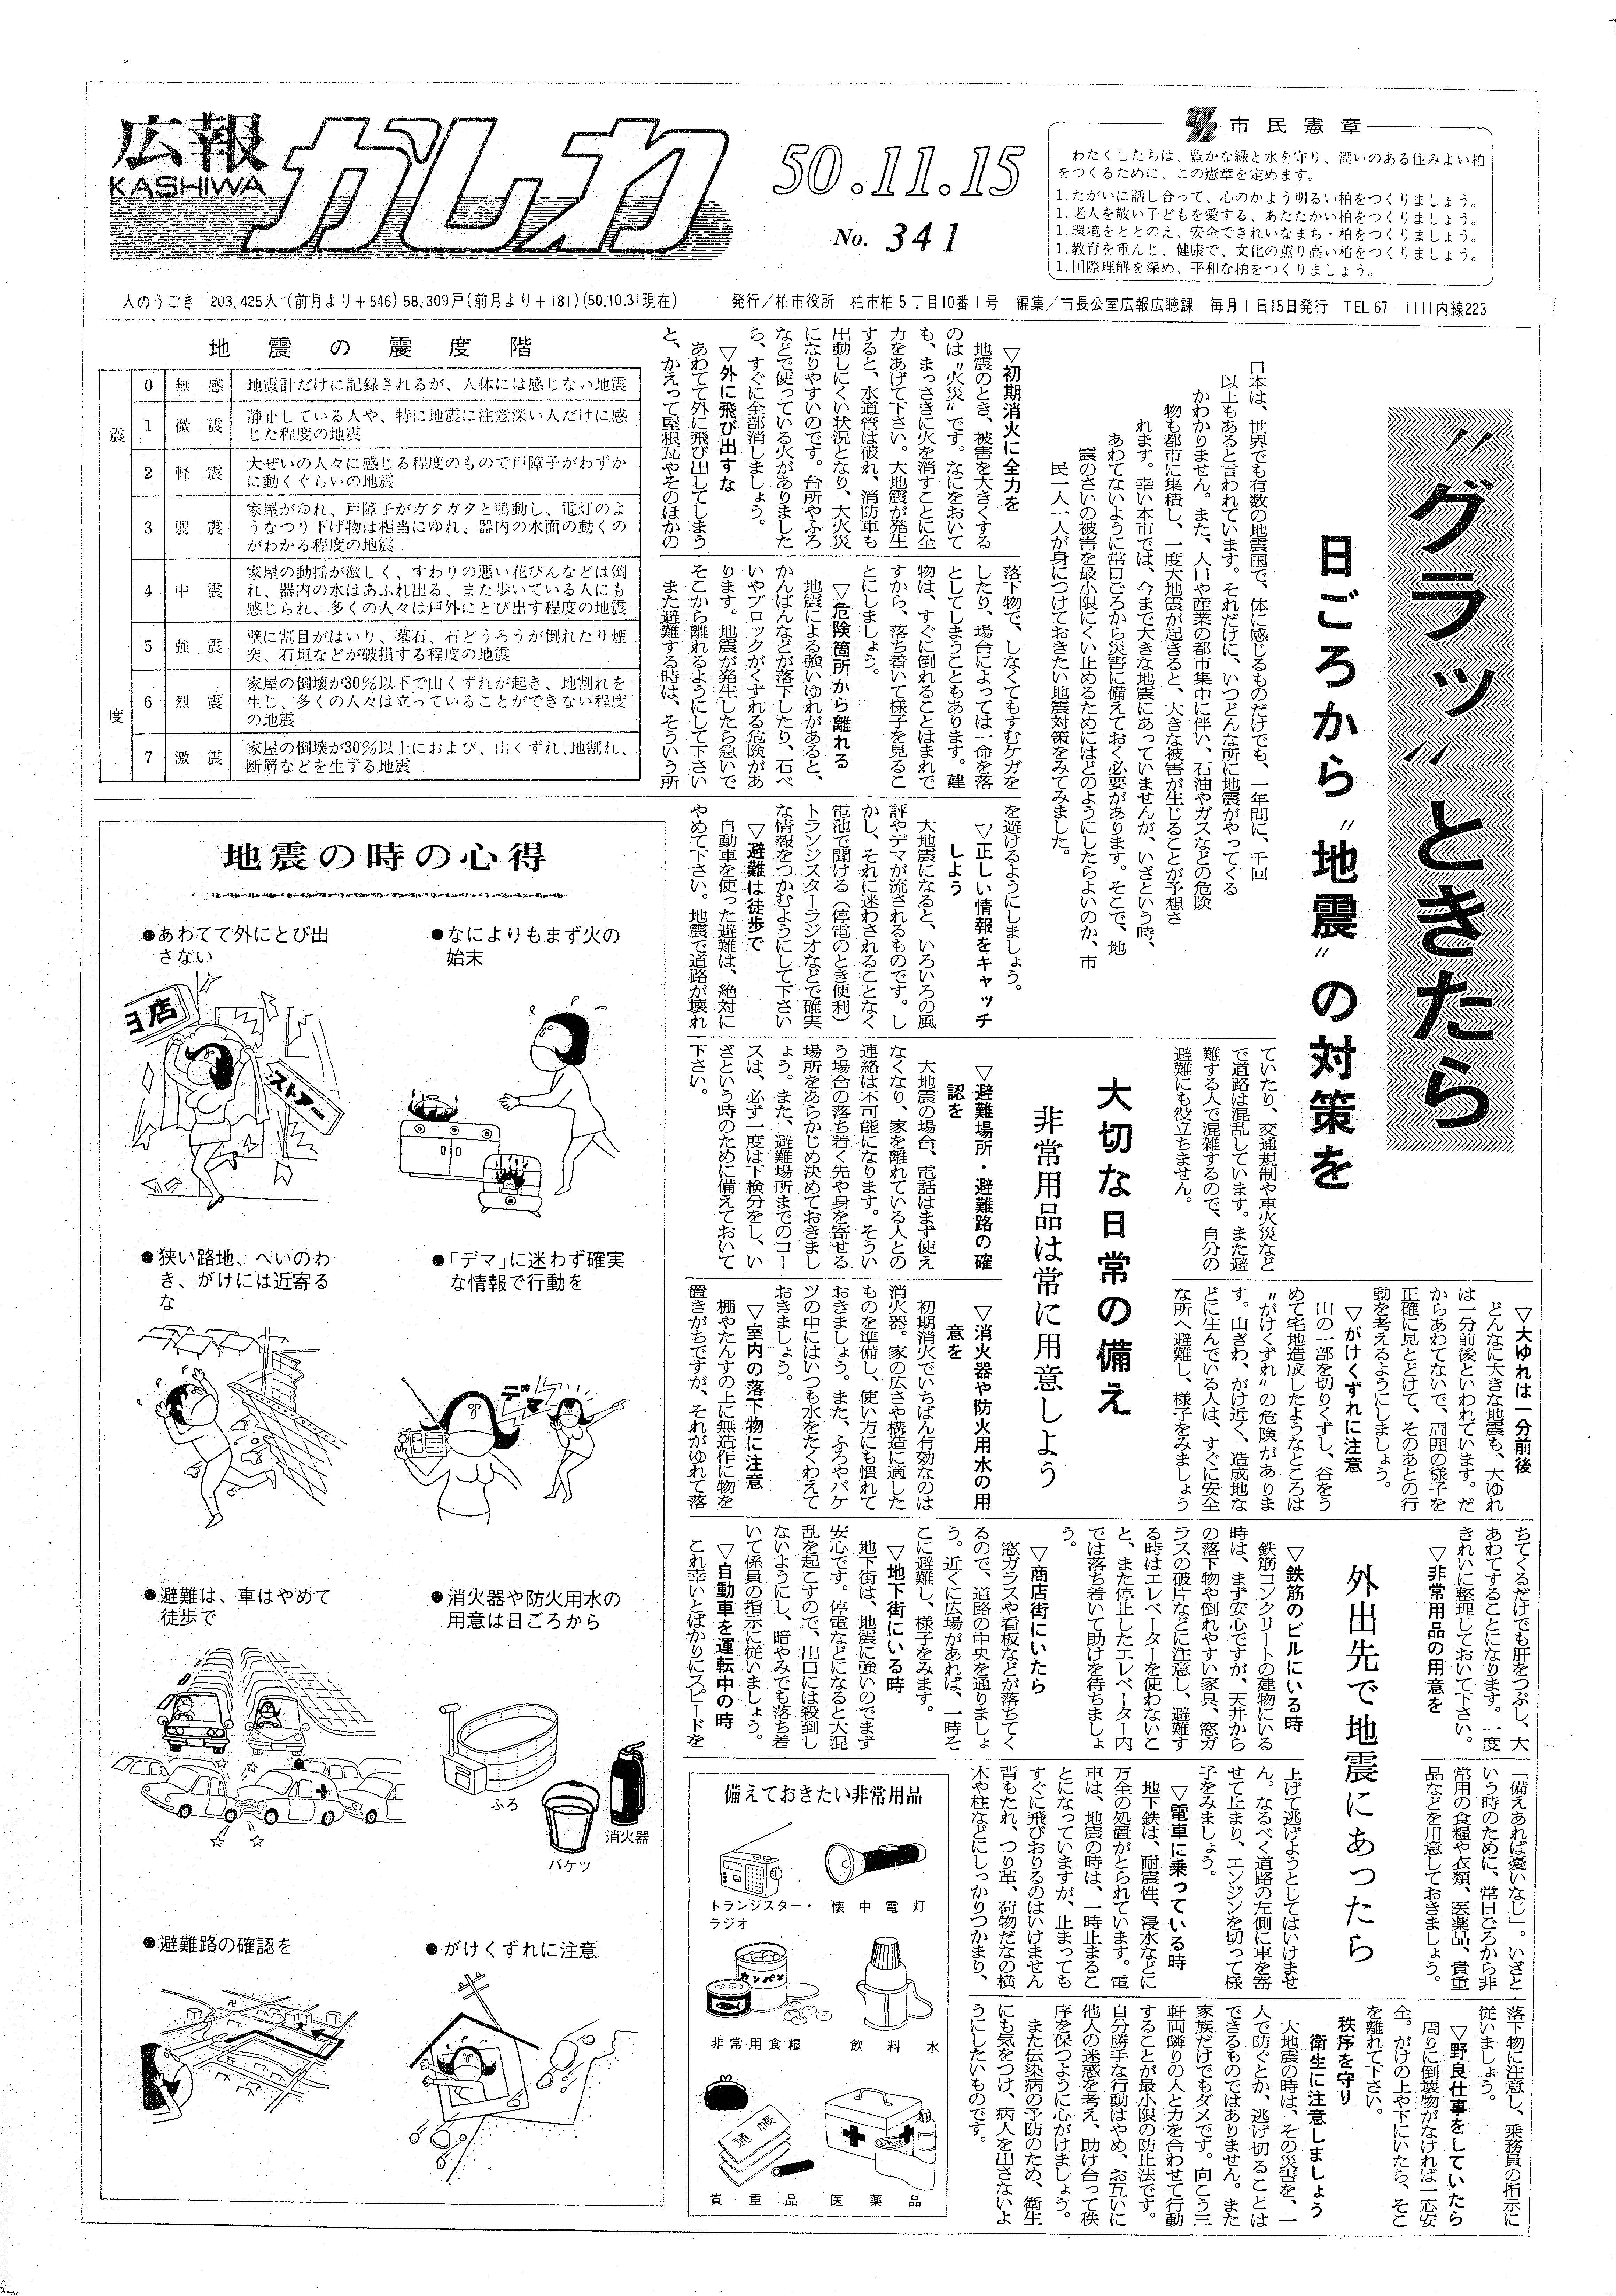 広報かしわ　昭和50年11月15日発行　341号